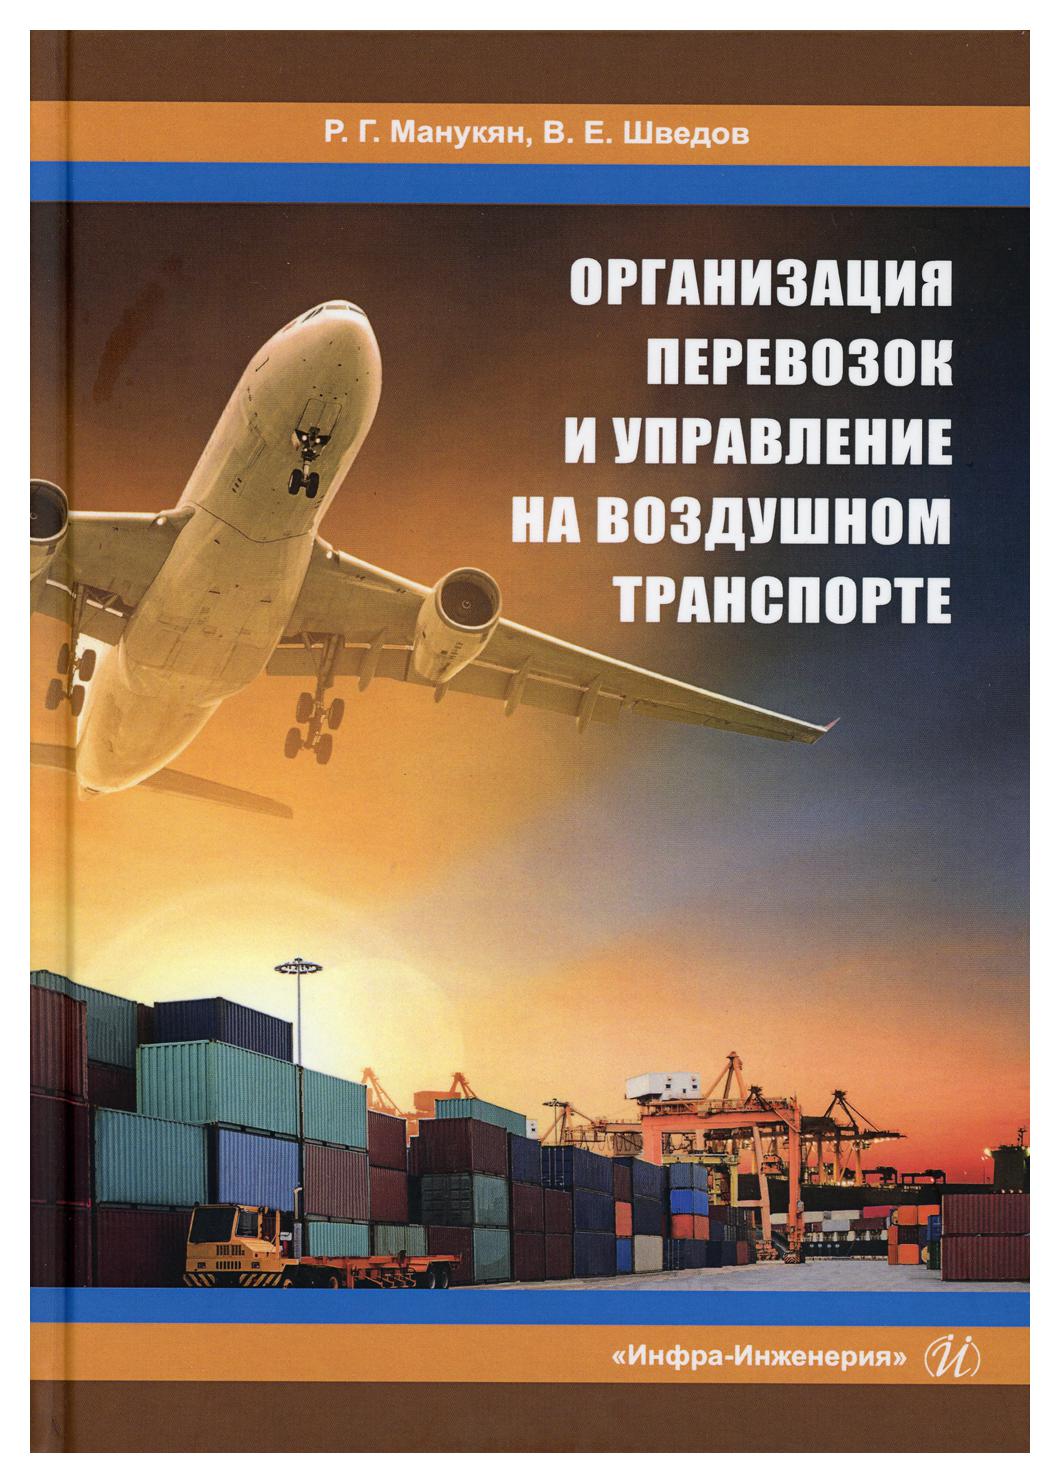 фото Книга организация перевозок и управление на воздушном транспорте инфра-инженерия